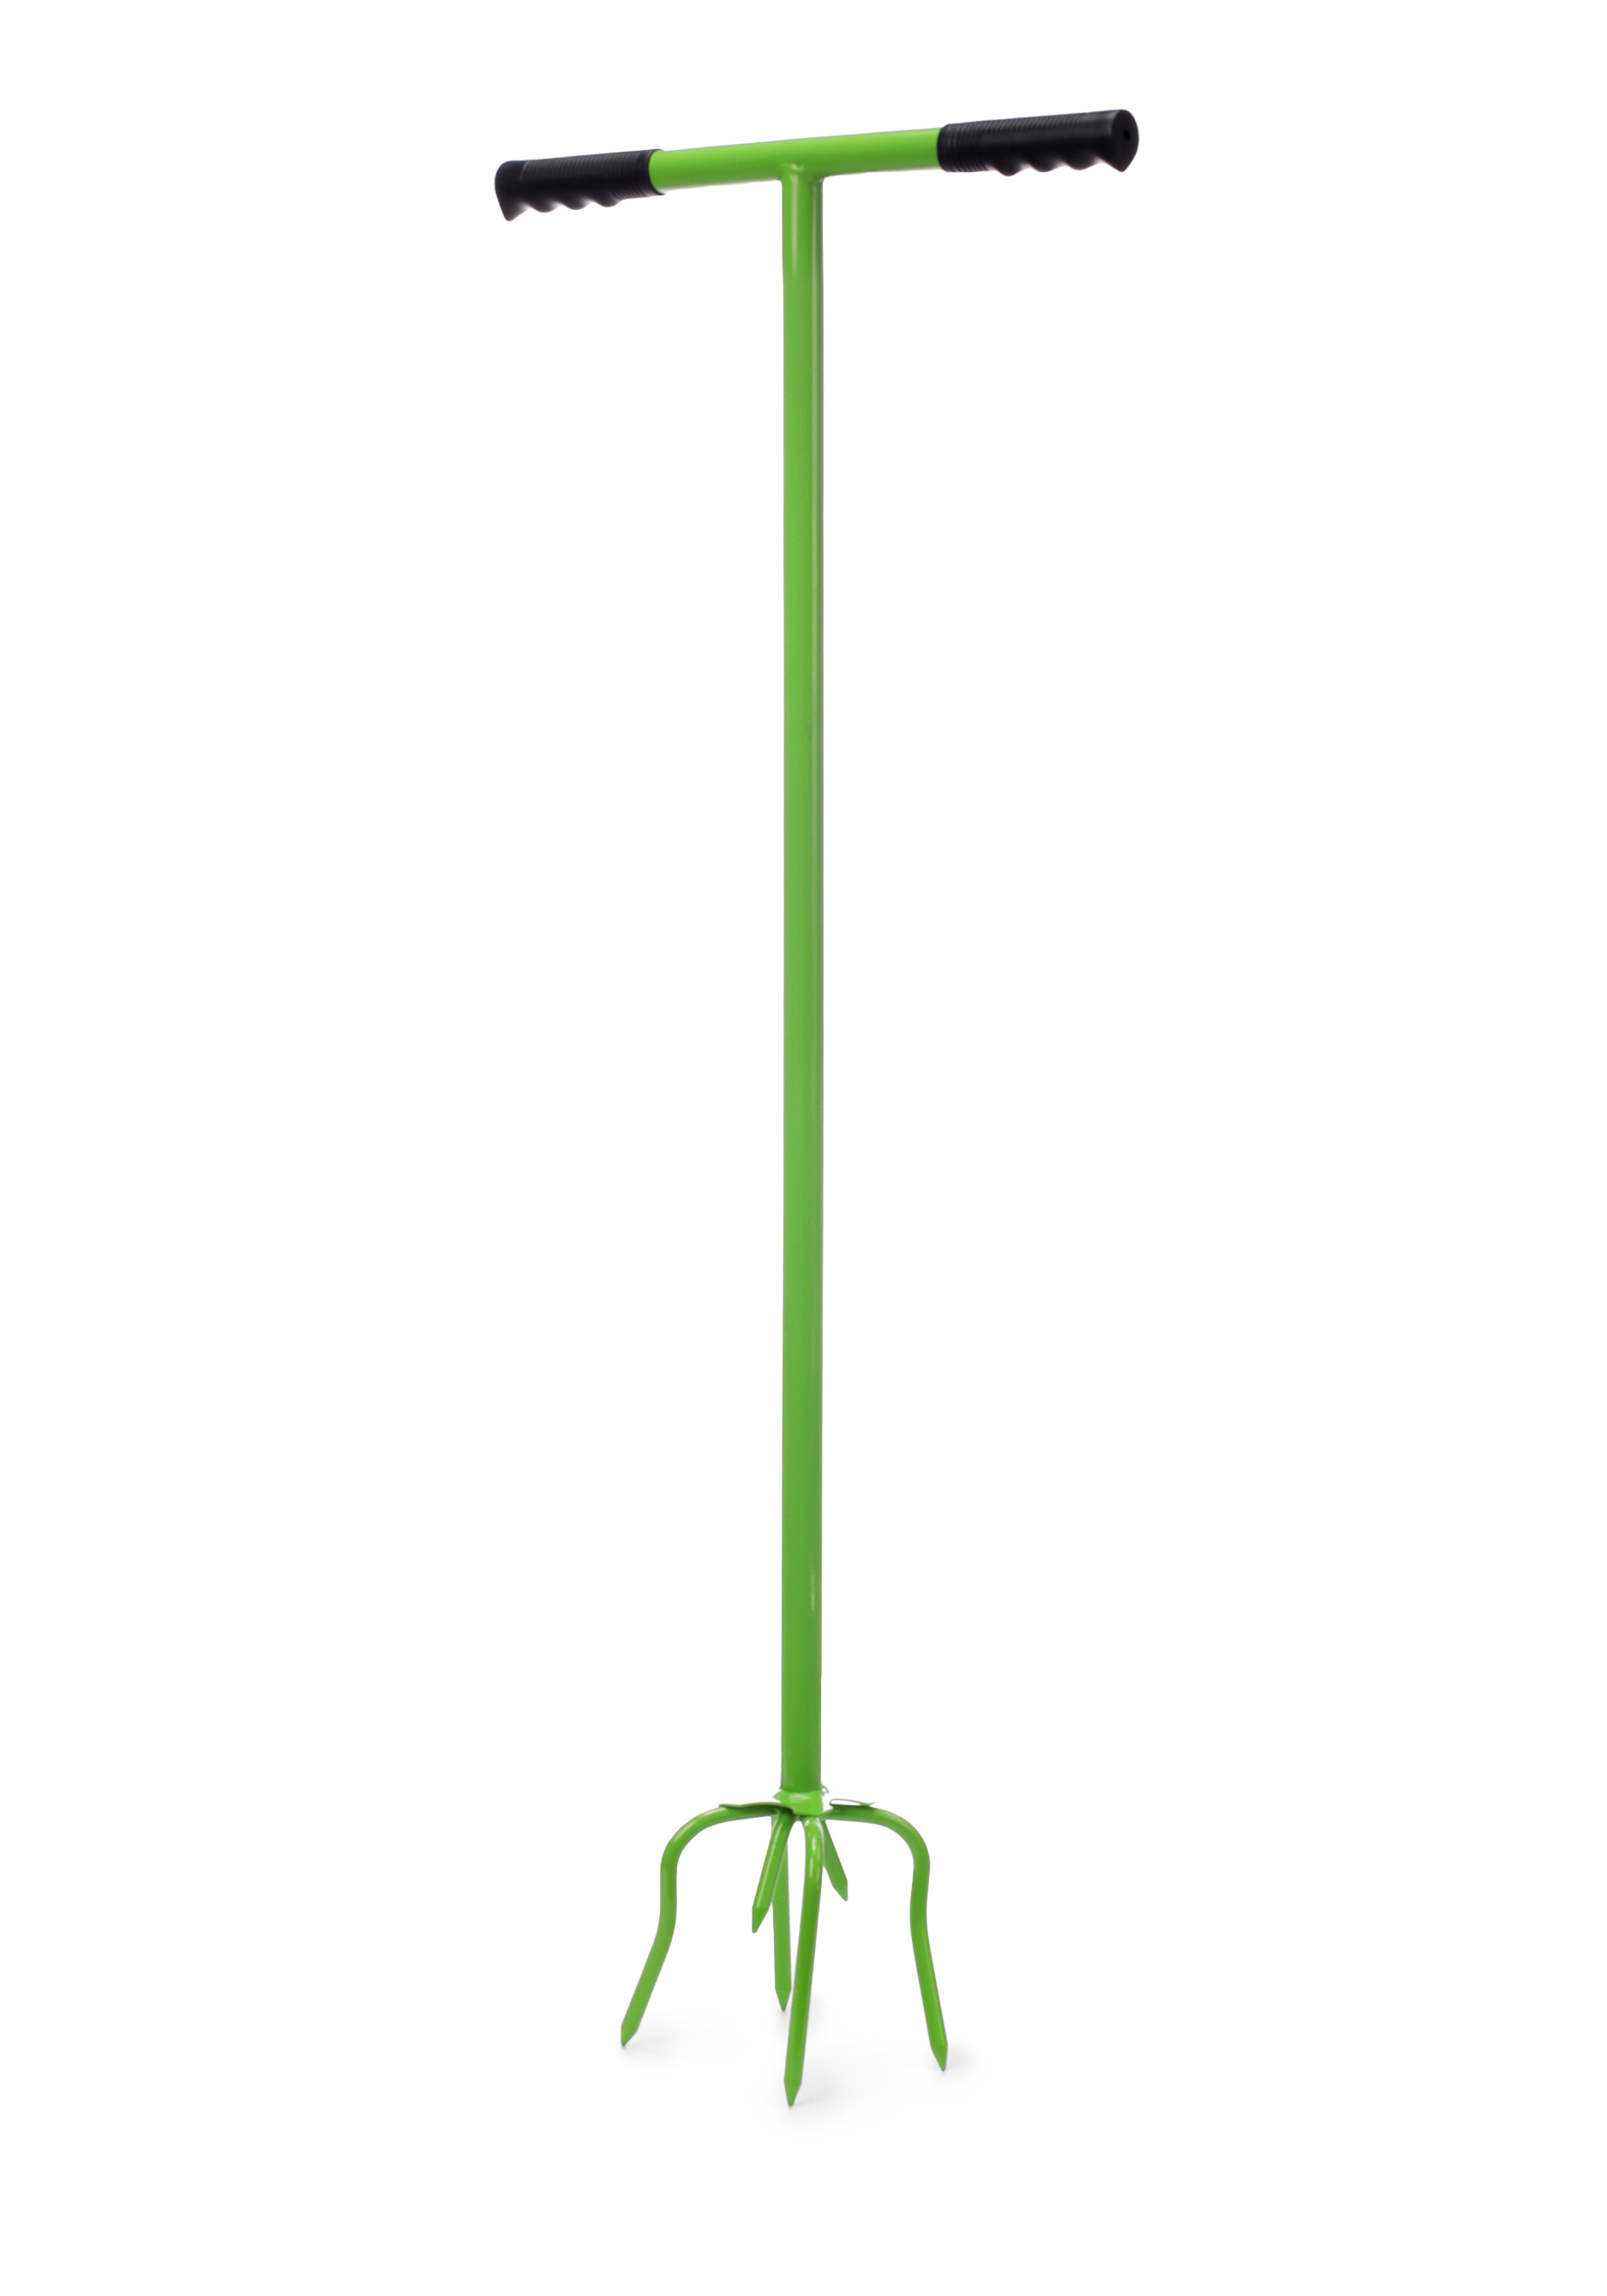 Садовый культиватор ЕВРОГАРАНТ, цвет зеленый, размер 14*38*99 - фото 1